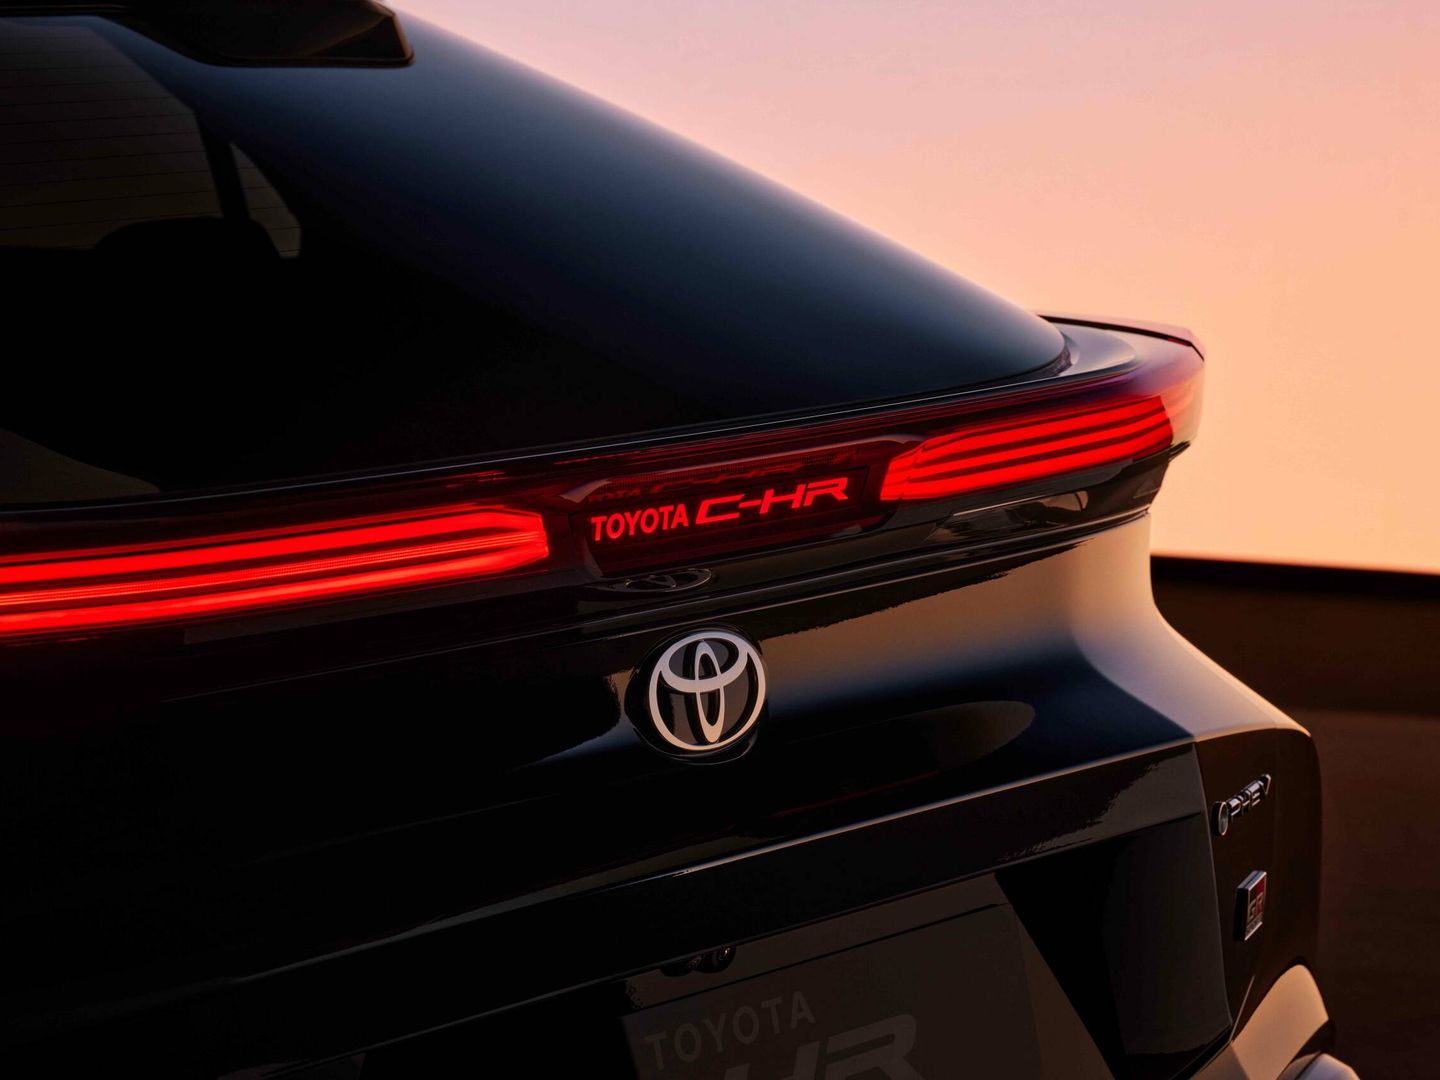 El nombre del coche, Toyota C-HR, luce iluminado solamente en parado.